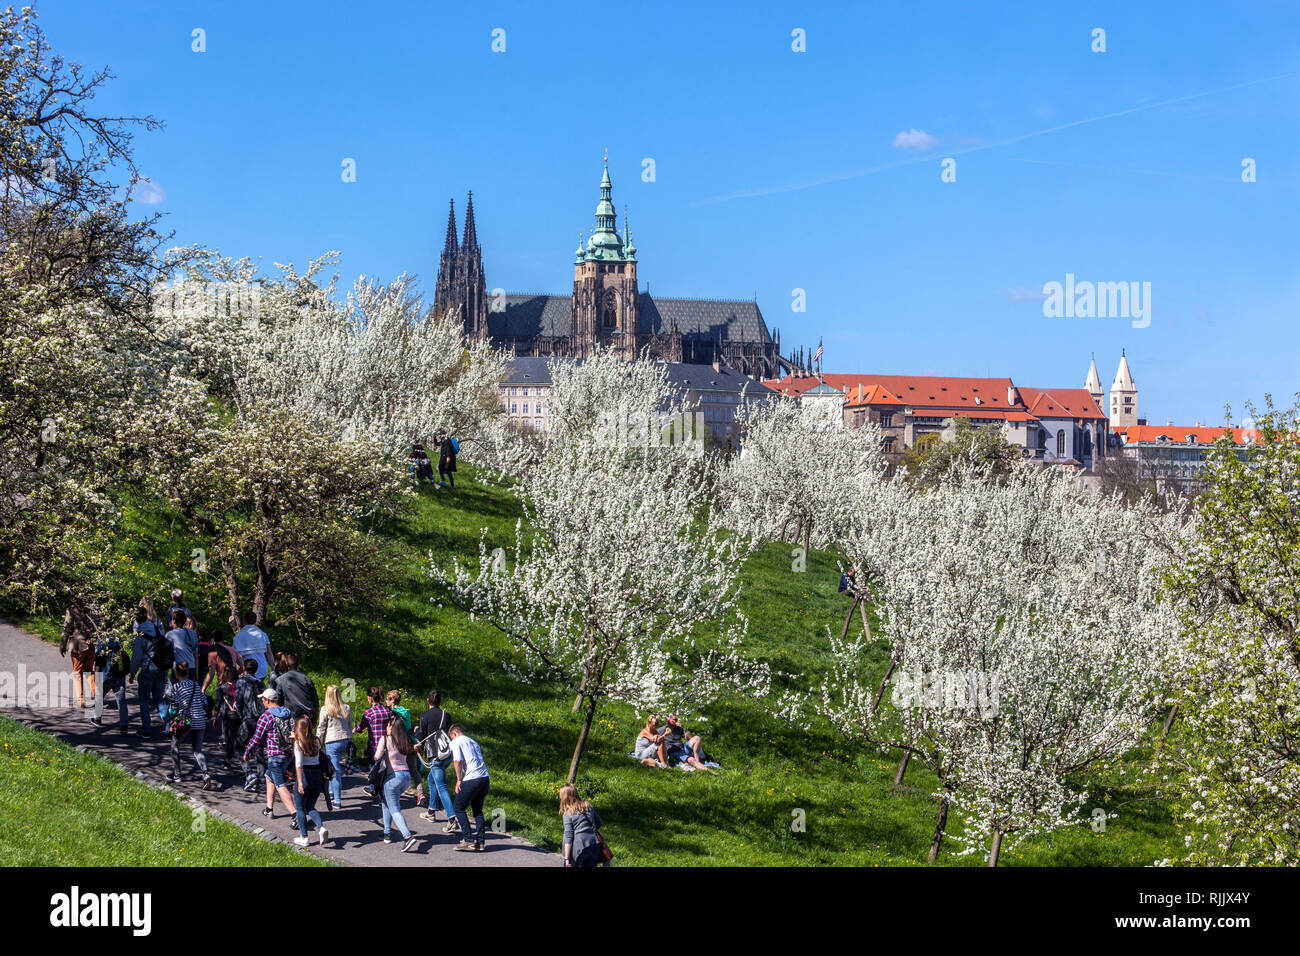 Arbres fleuris dans le parc Petrin Château de Prague fond, une foule de personnes marchant dans le jardin, Château de Prague panorama de source, République tchèque Banque D'Images